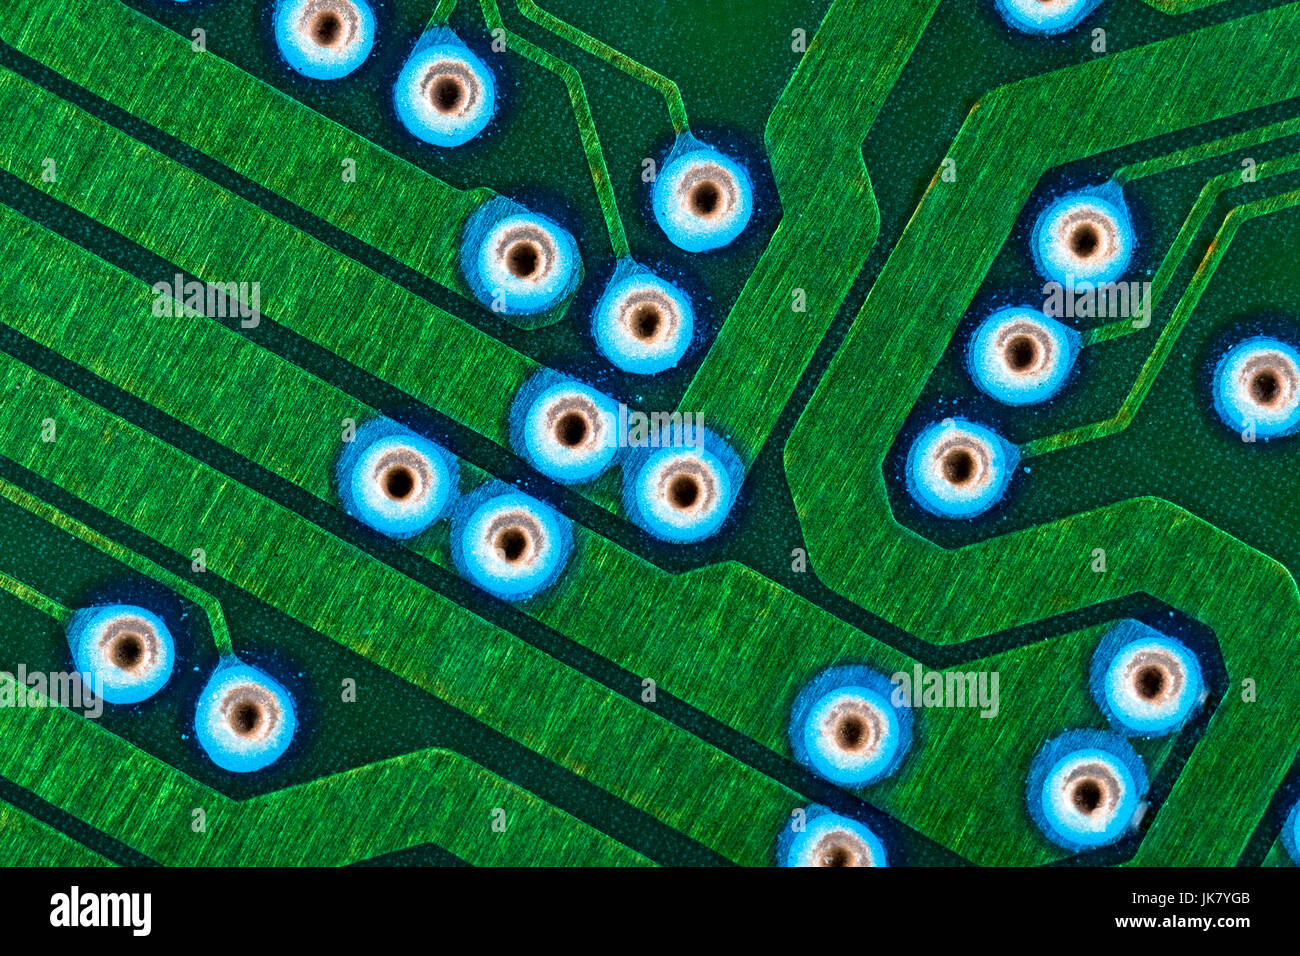 Makrofoto der Anschlussspuren auf grüner Leiterplatte (pcb) mit blauen Tauchlöchern sichtbar. Verkabelung im Computer, Details zum Schließen des Stromkreises. Stockfoto